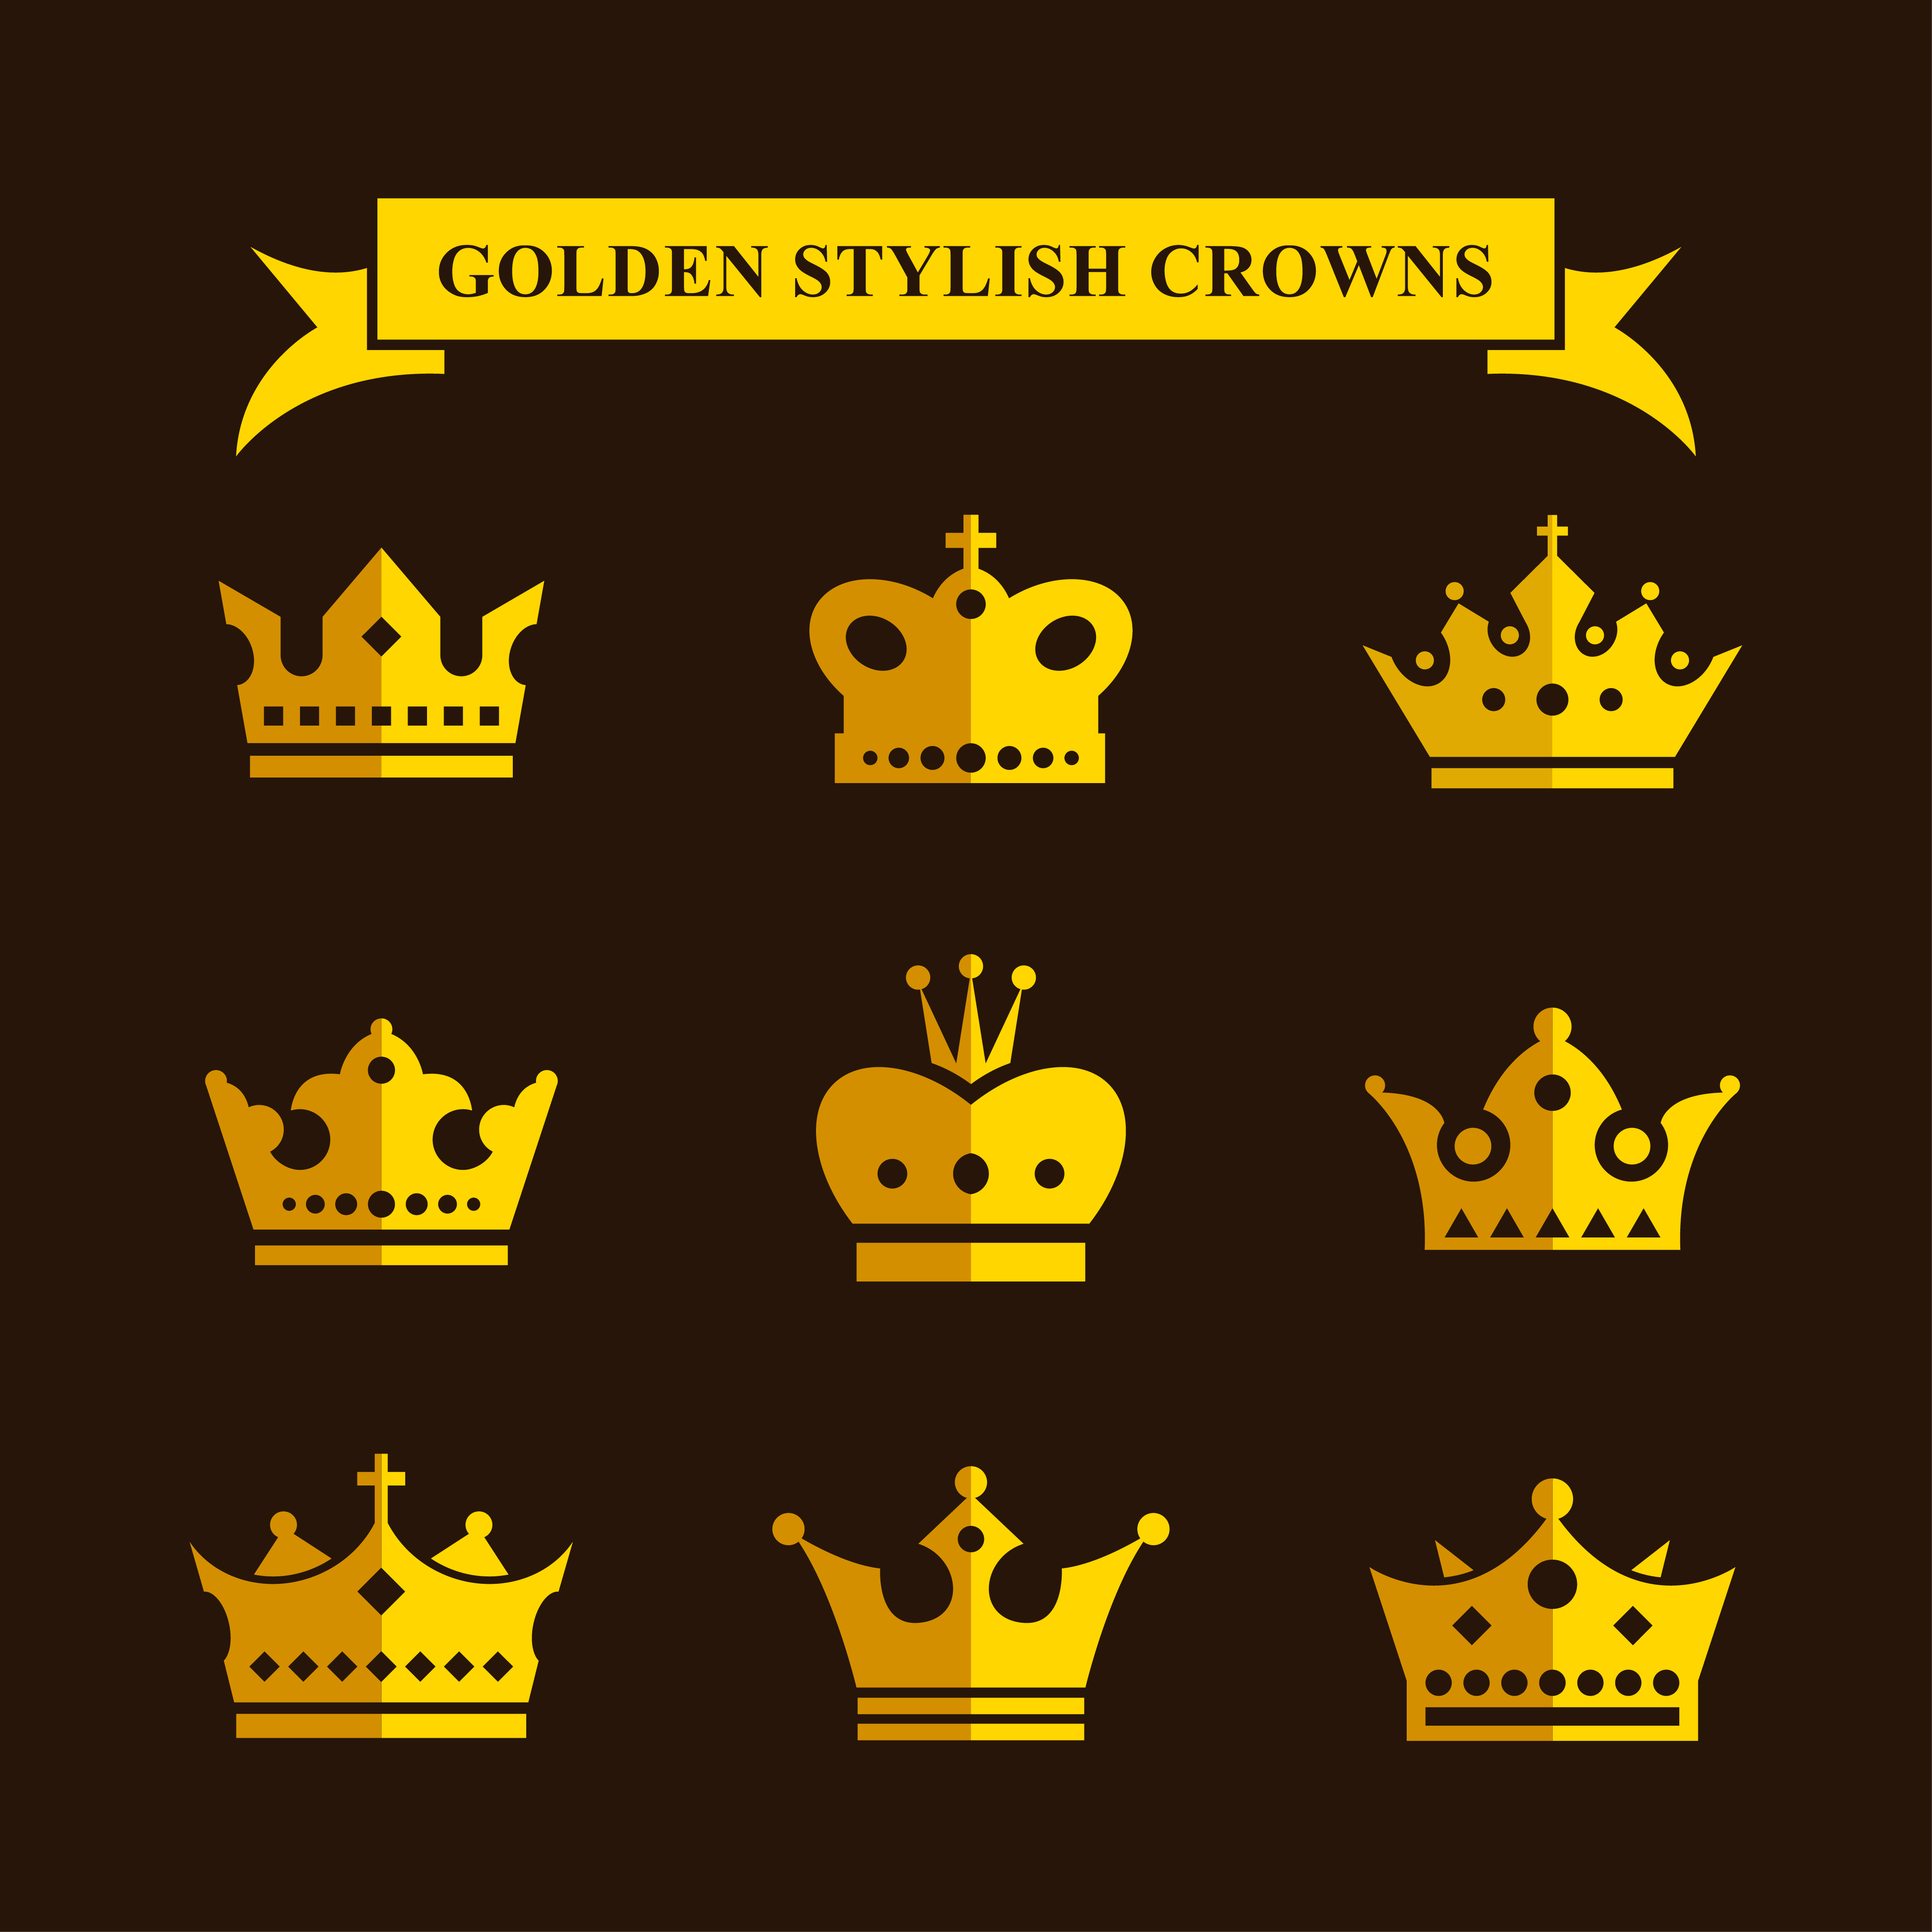 Golden Stylish Crowns Photoshop brush